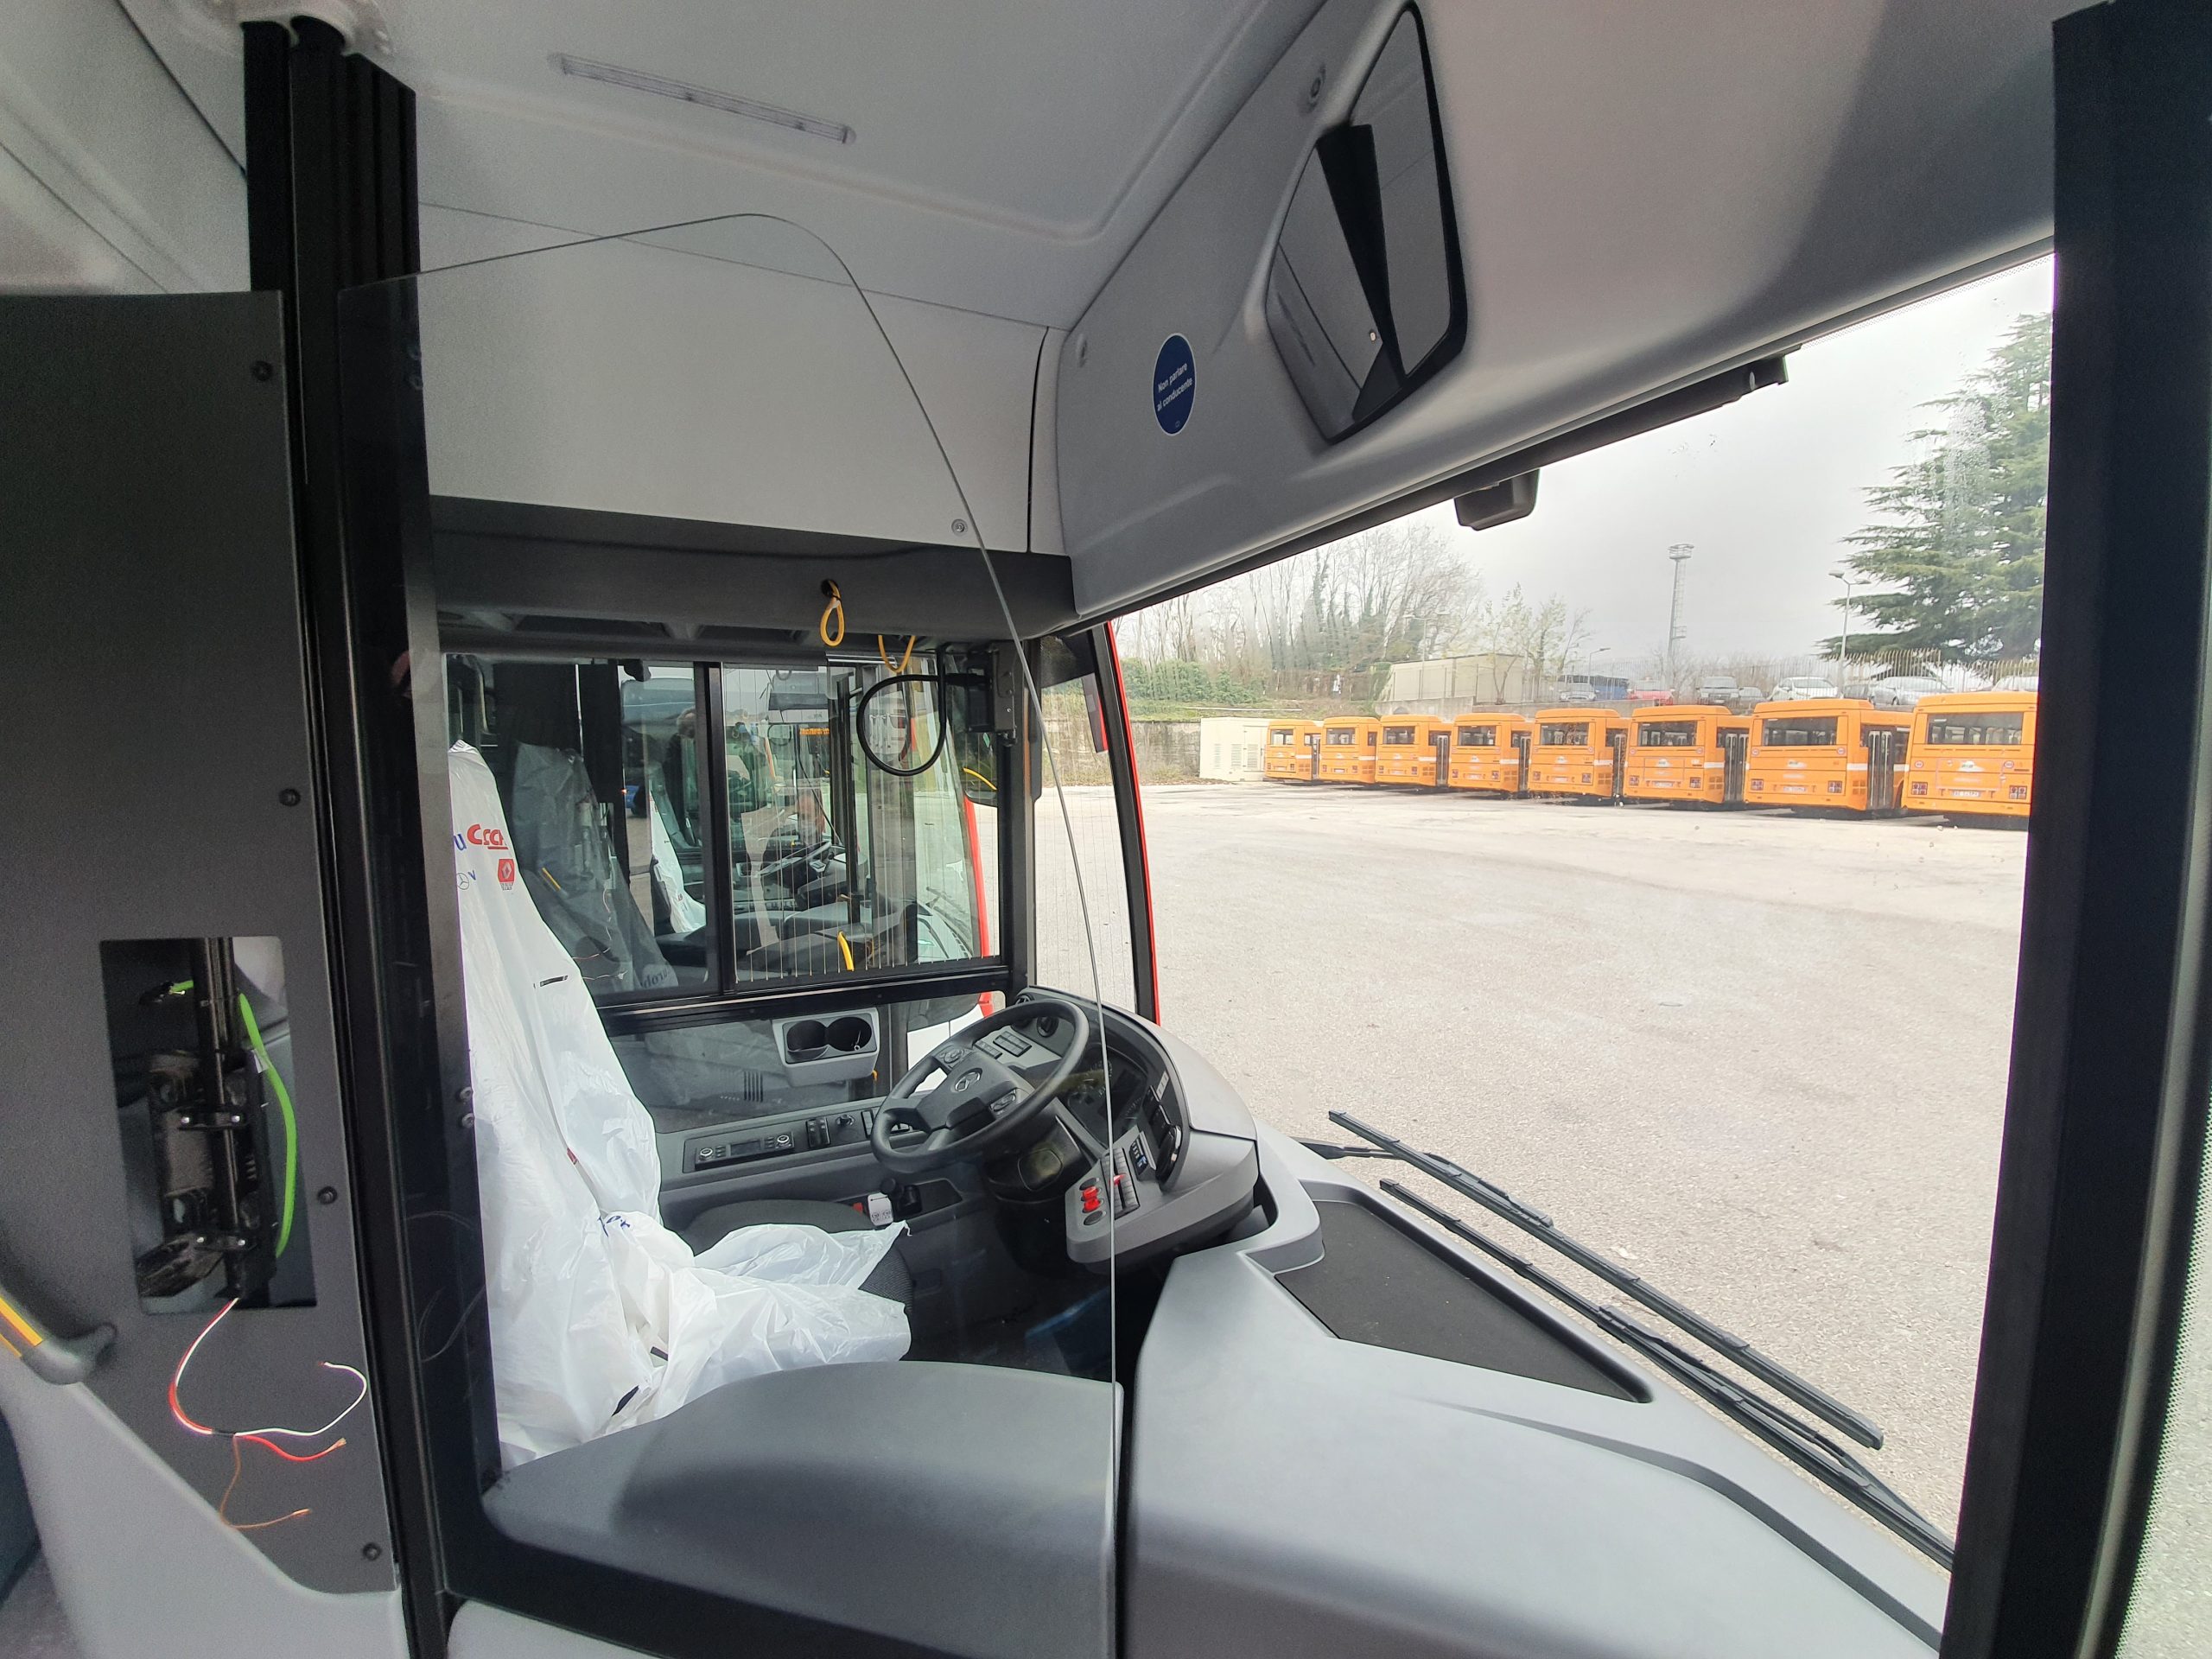 Avellino| Air, ecco i primi 5 autobus con barriere anticontagio. Rimodulati i servizi durante le festività